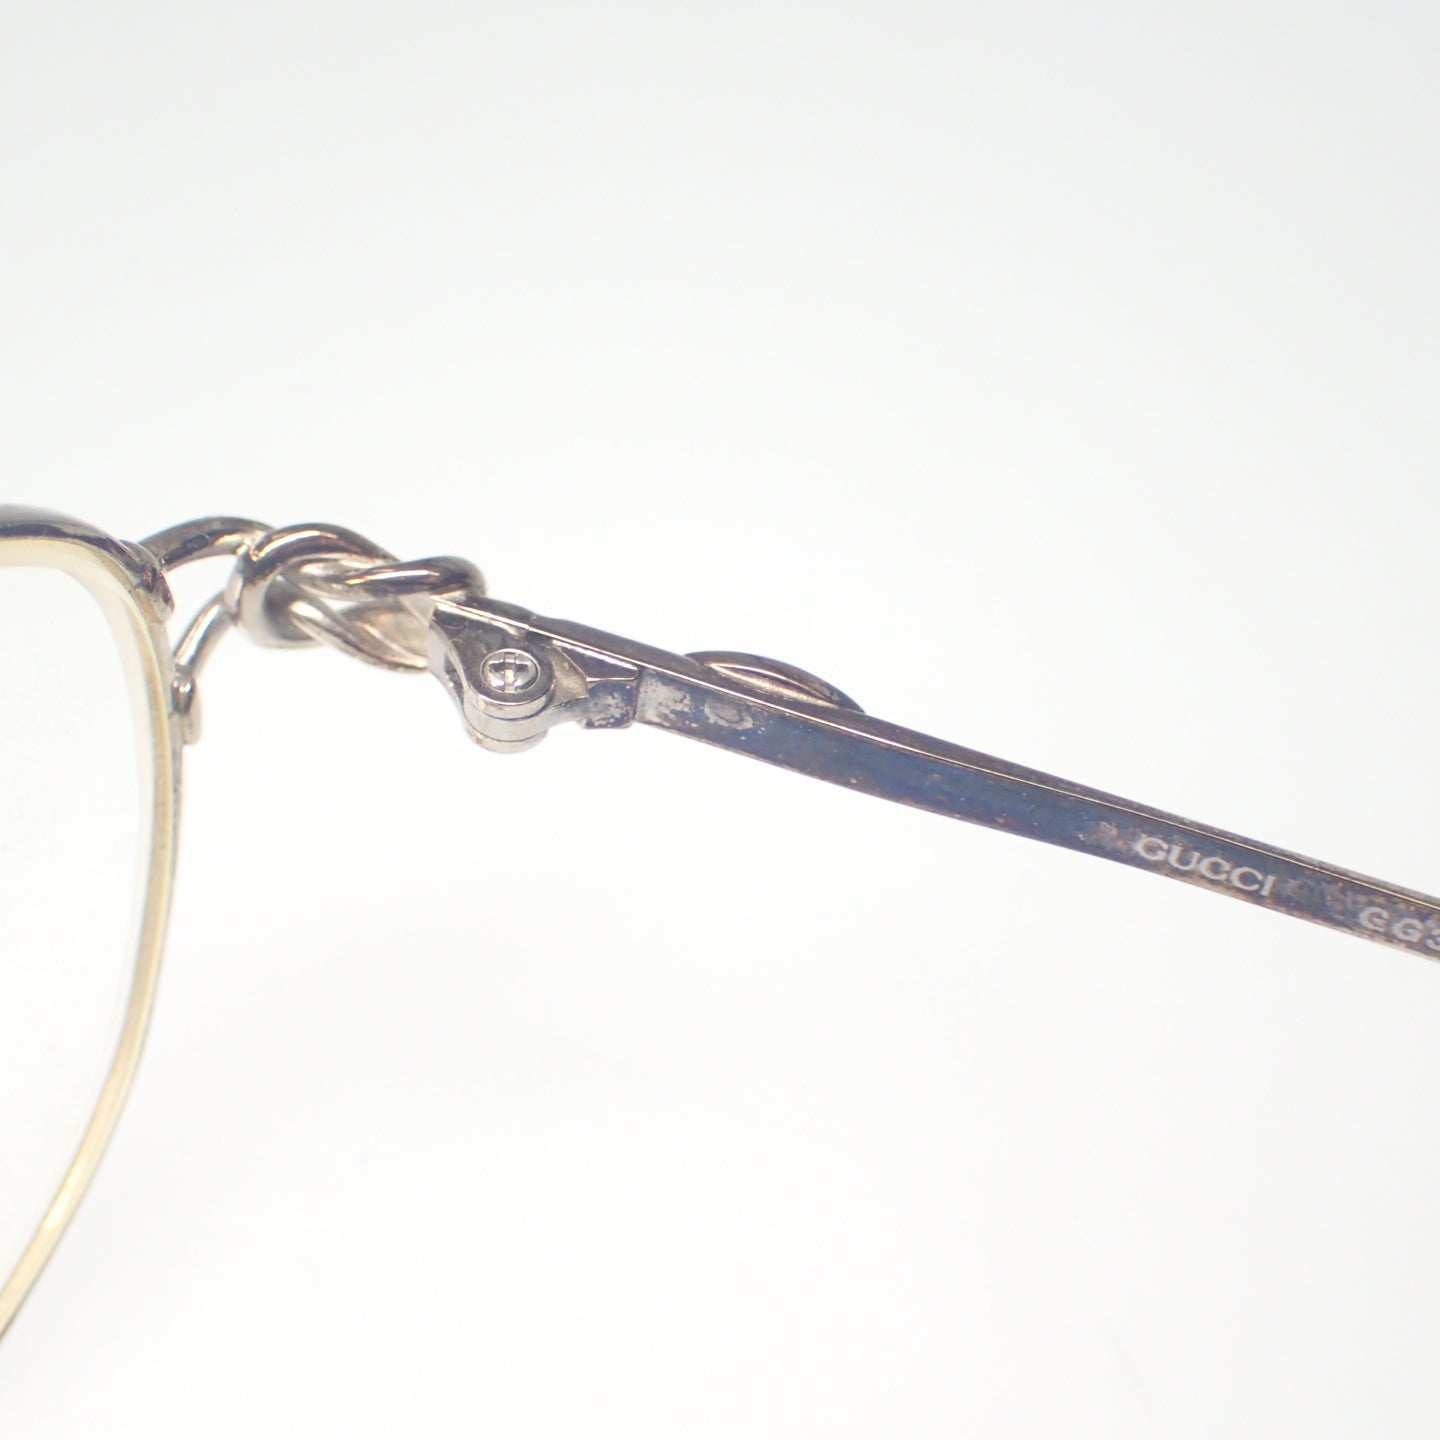 Used ◆Gucci glasses prescription GG3712 52 □17-135 GUCCI [AFI14] 